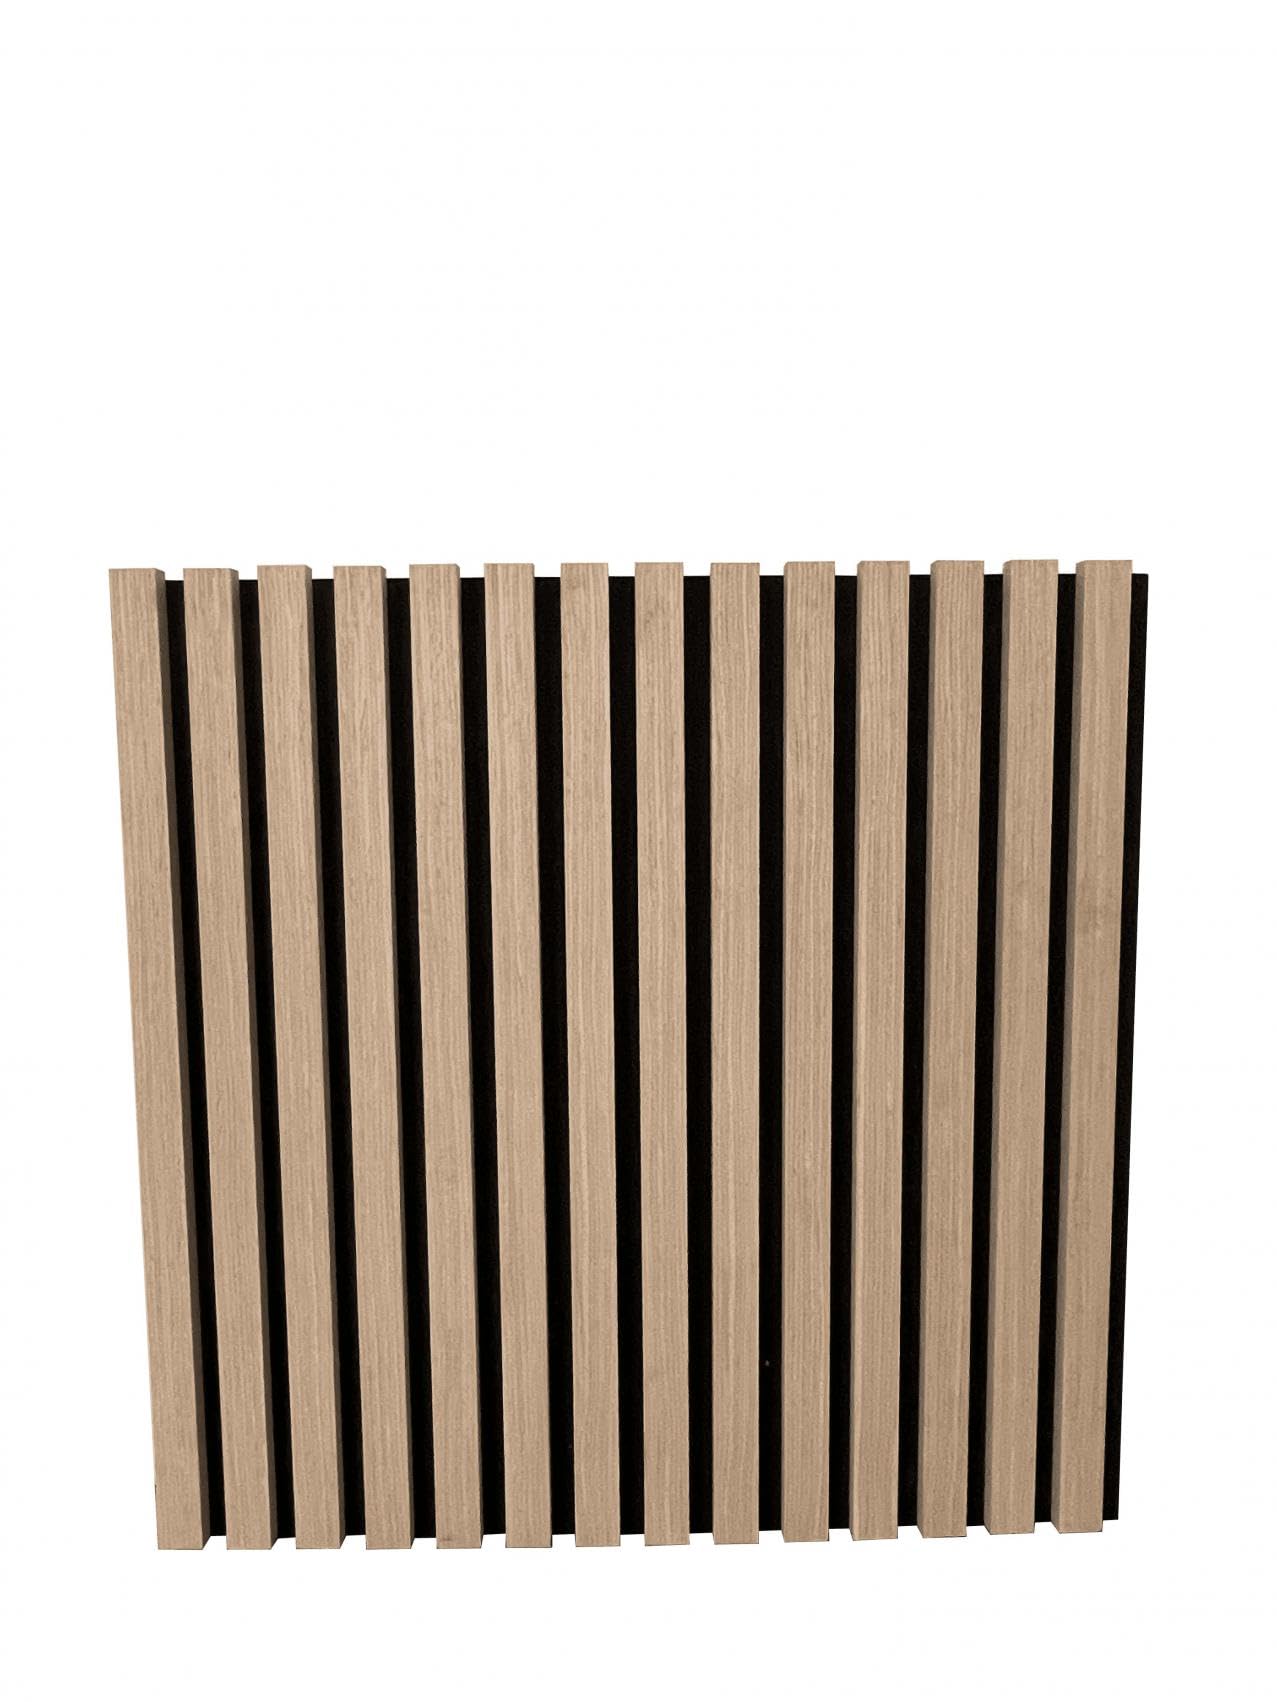 3 x Endorphin® Akustikpaneele Holz in 58x58x2,1cm | 5 Farben | Wandpaneele Echtholzfurnier mit Filz | Holzpaneele Wandverkleidung zum Kleben oder Anschrauben | Einfache Montage (Eiche weiß)